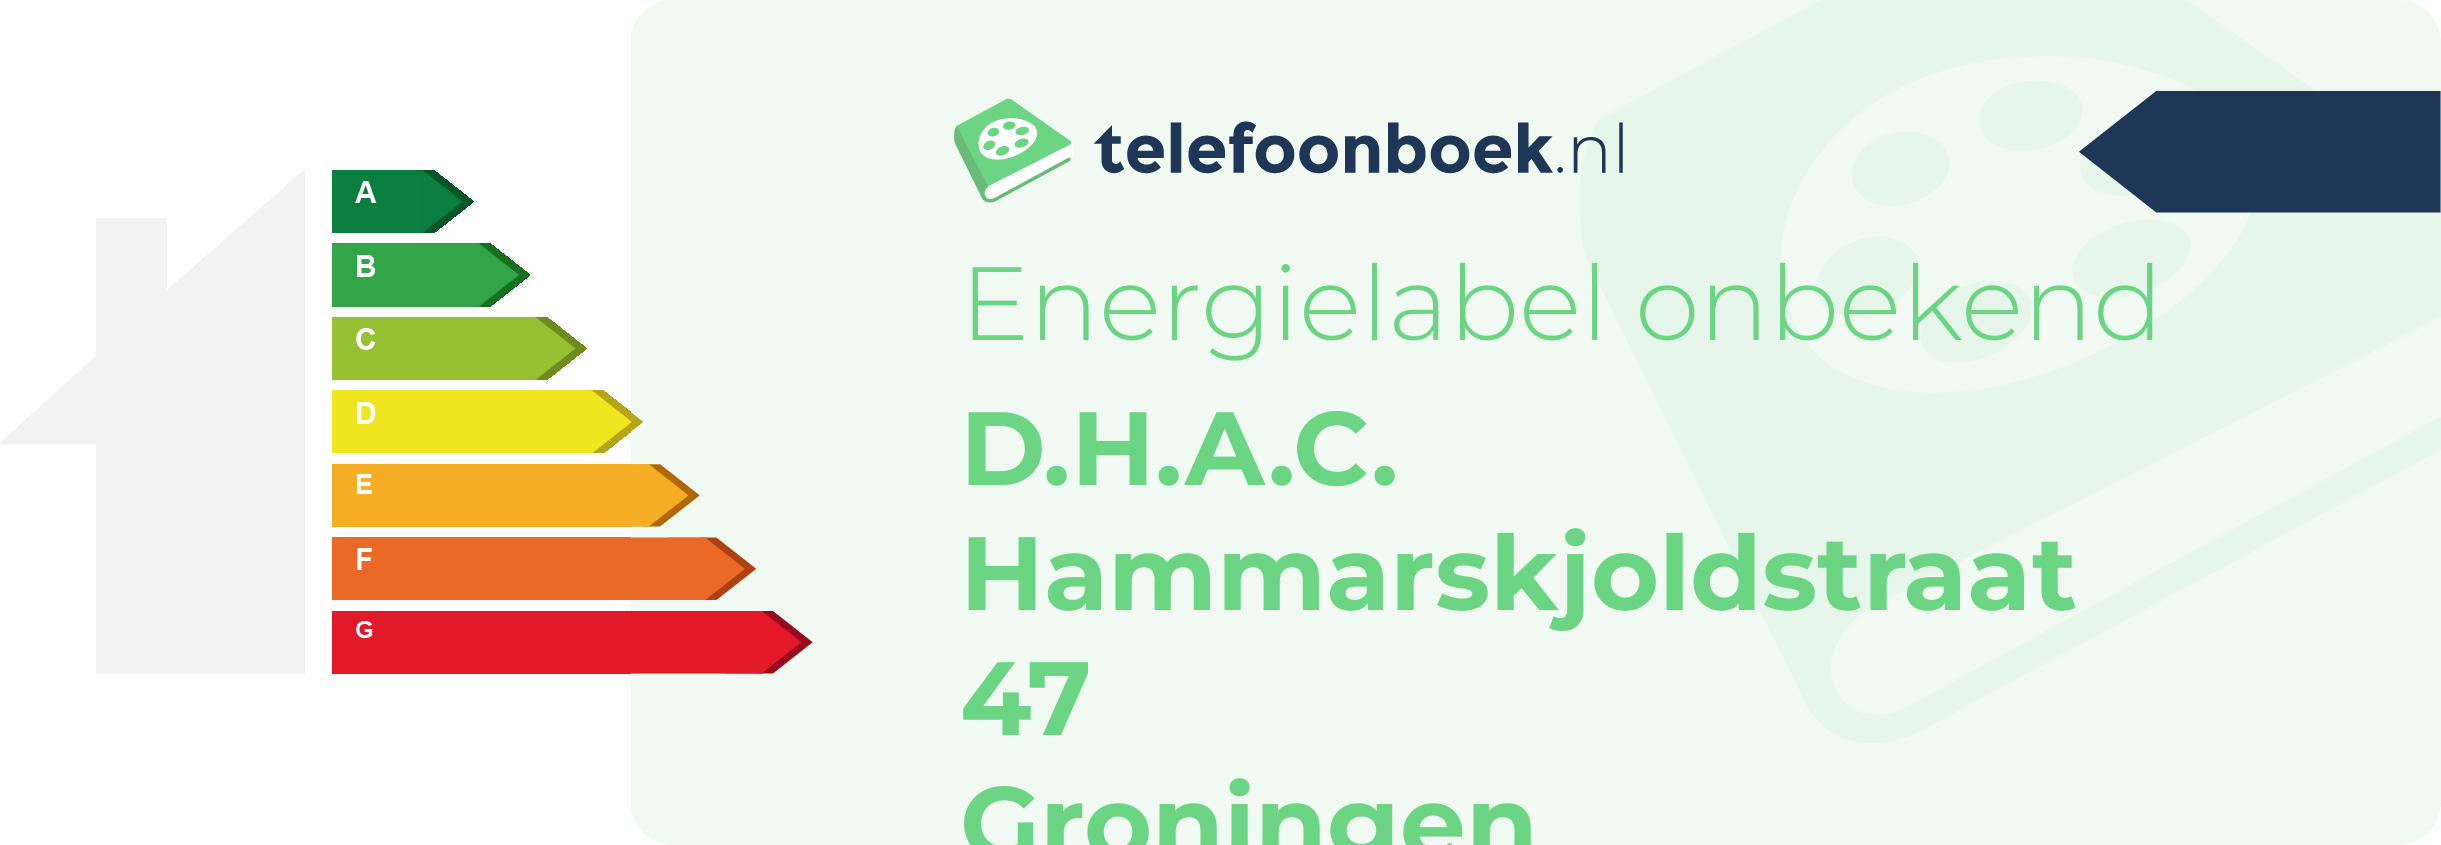 Energielabel D.H.A.C. Hammarskjoldstraat 47 Groningen